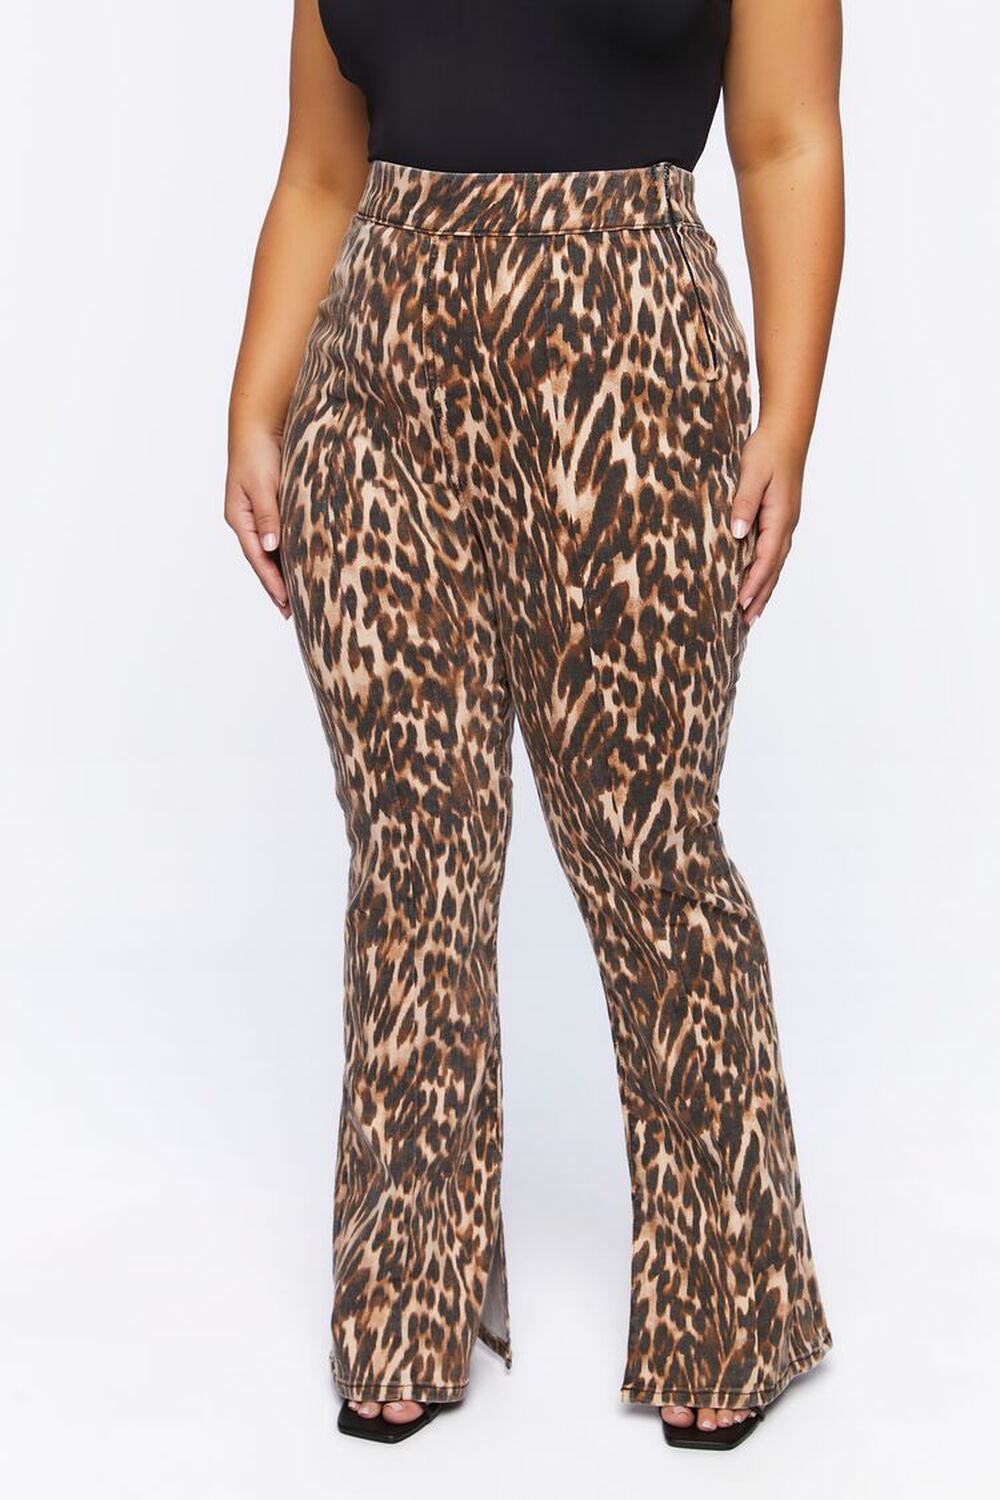 Plus Size Leopard Print Bootcut Jeans